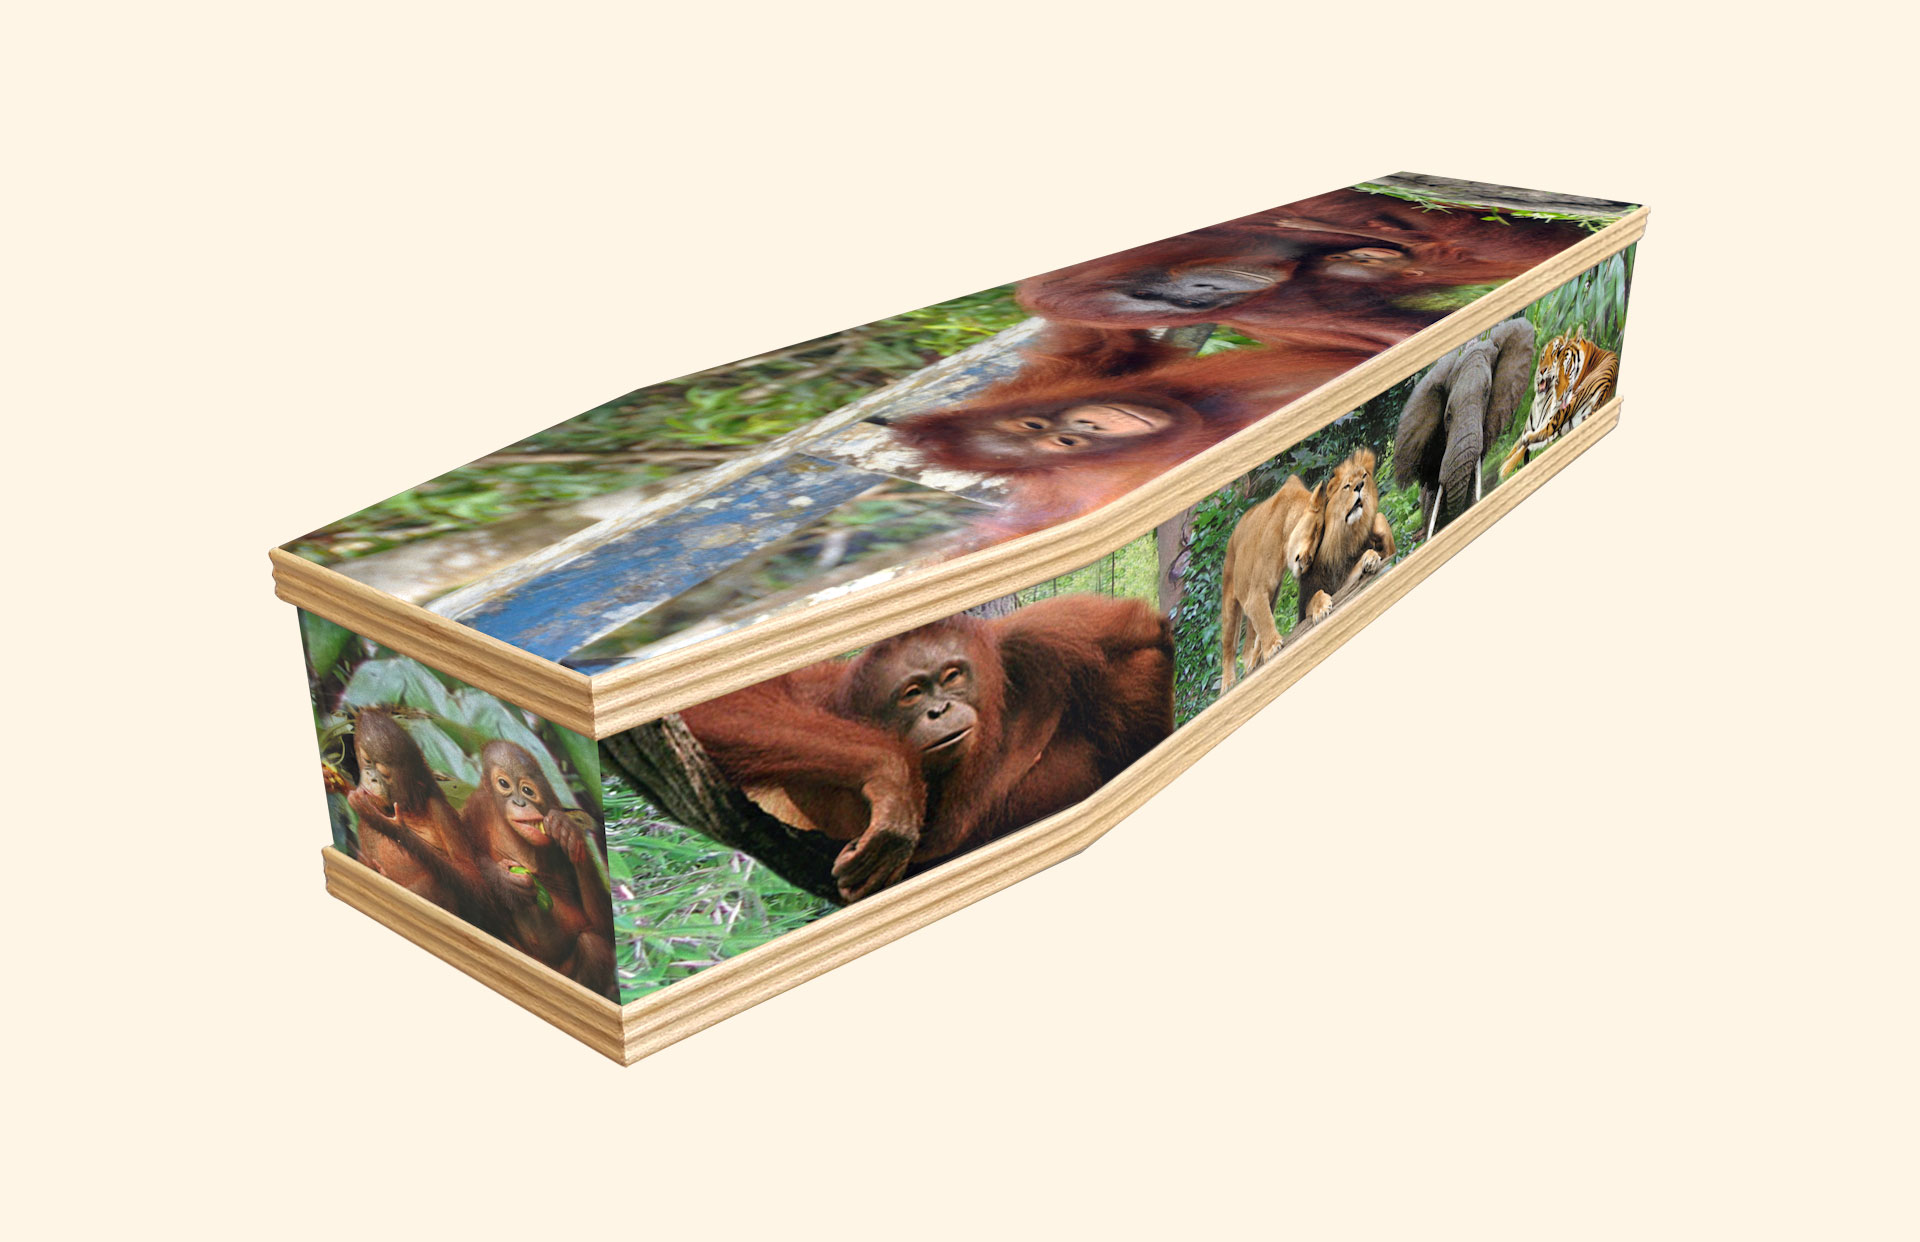 Jungle Love design on a classic coffin